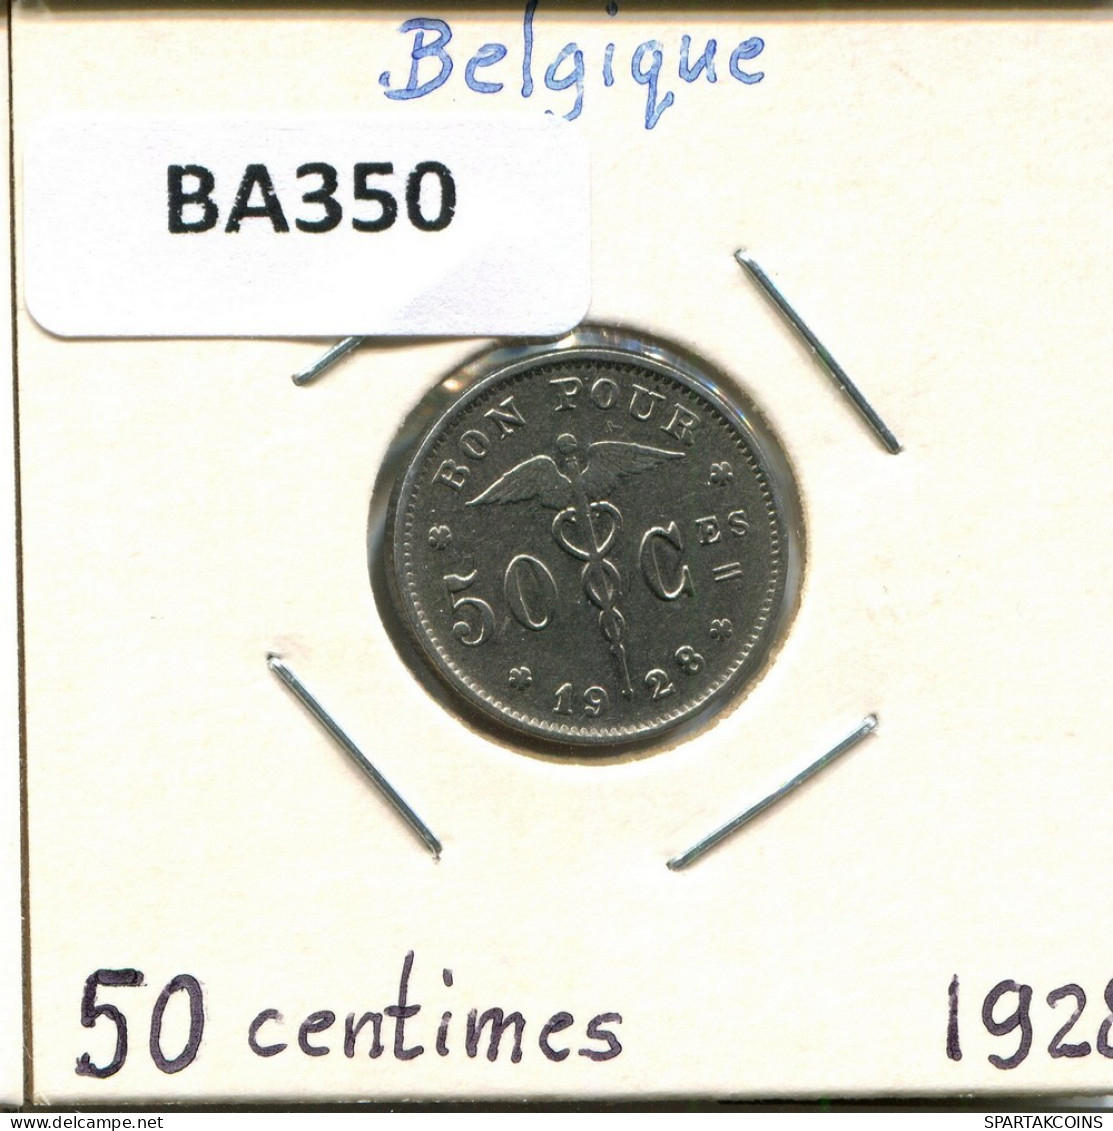 50 CENTIMES 1928 Französisch Text BELGIEN BELGIUM Münze #BA350.D.A - 50 Cent